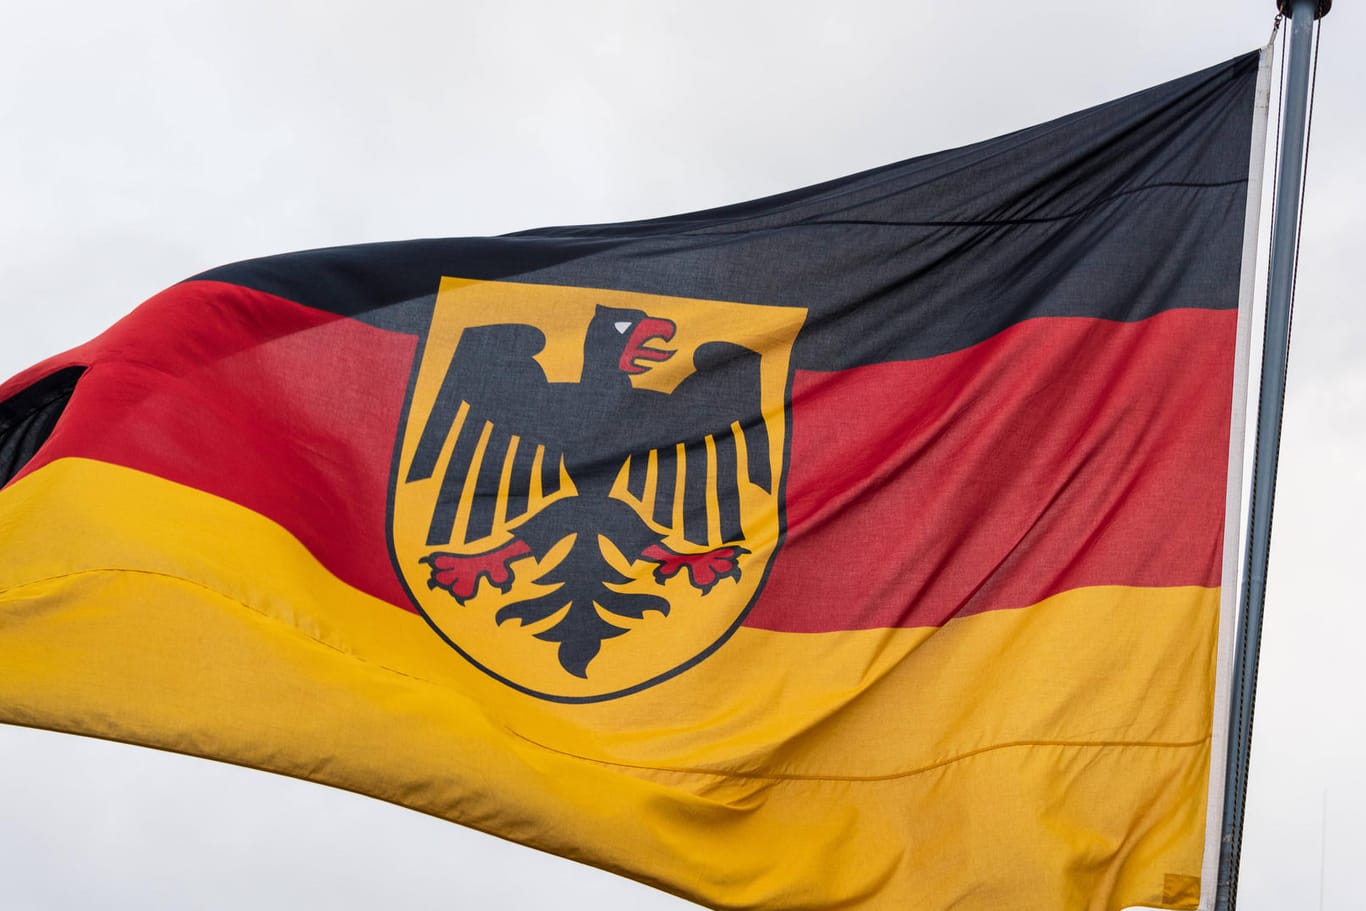 Flagge der Bundesrepublik Deutschland weht im Wind (Symbolbild): Sie ist ein deutsches Hoheitszeichen und Staatssymbol.